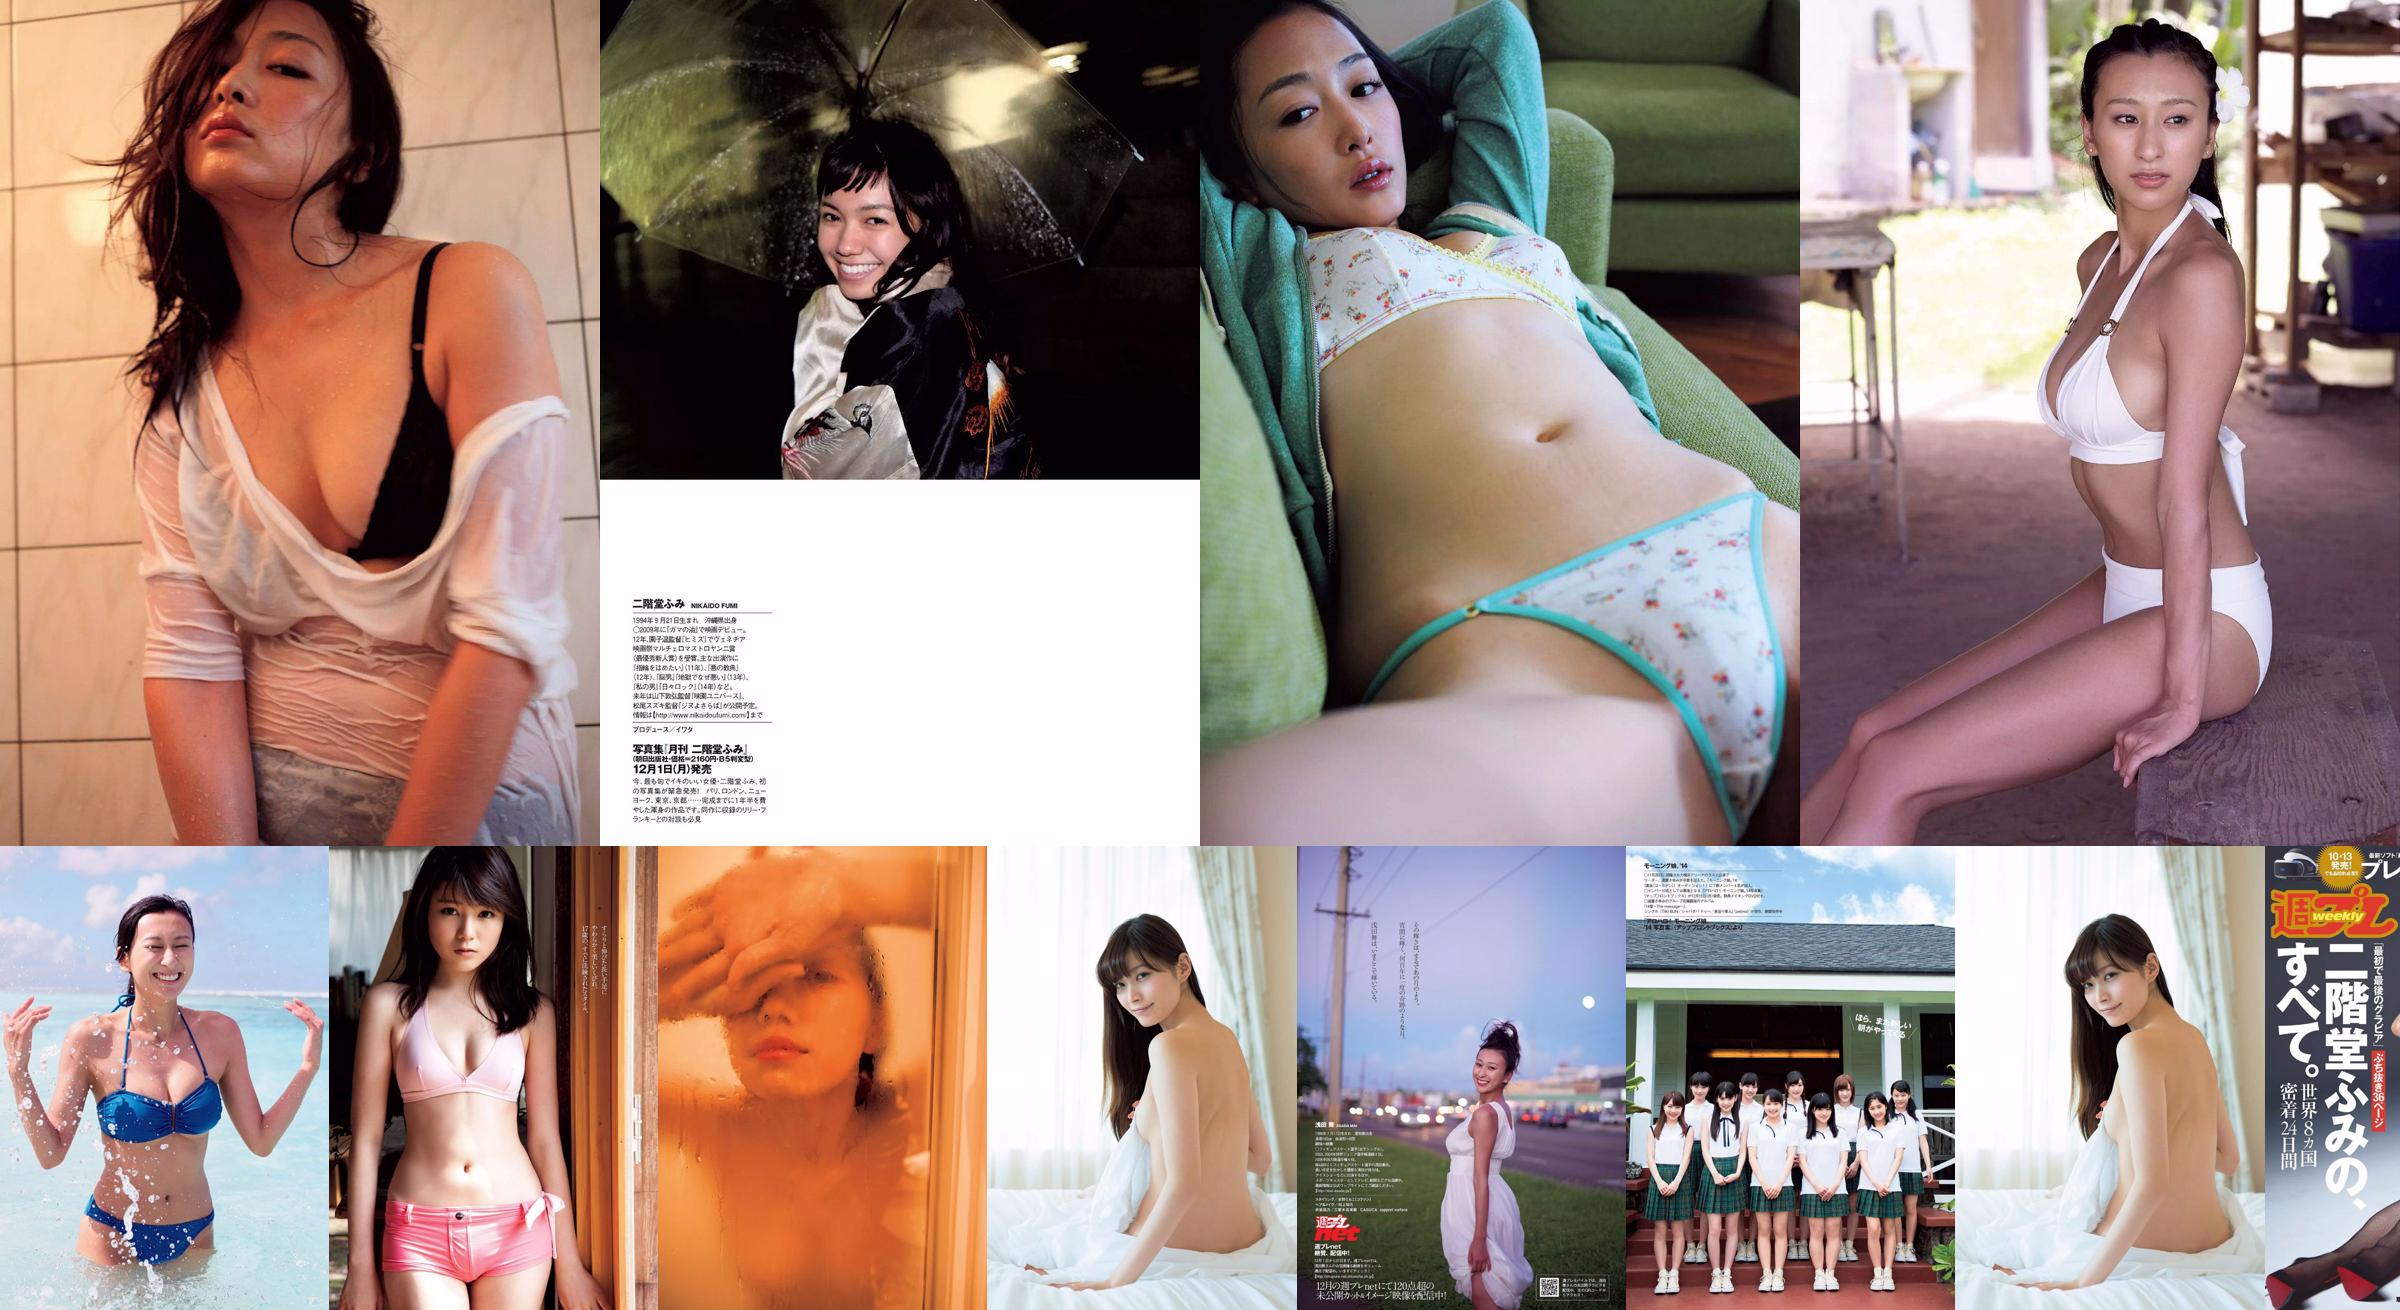 Fumi Nikaido [Wöchentlicher Playboy] 2016 No.43 Photo Magazine No.4b0843 Seite 4